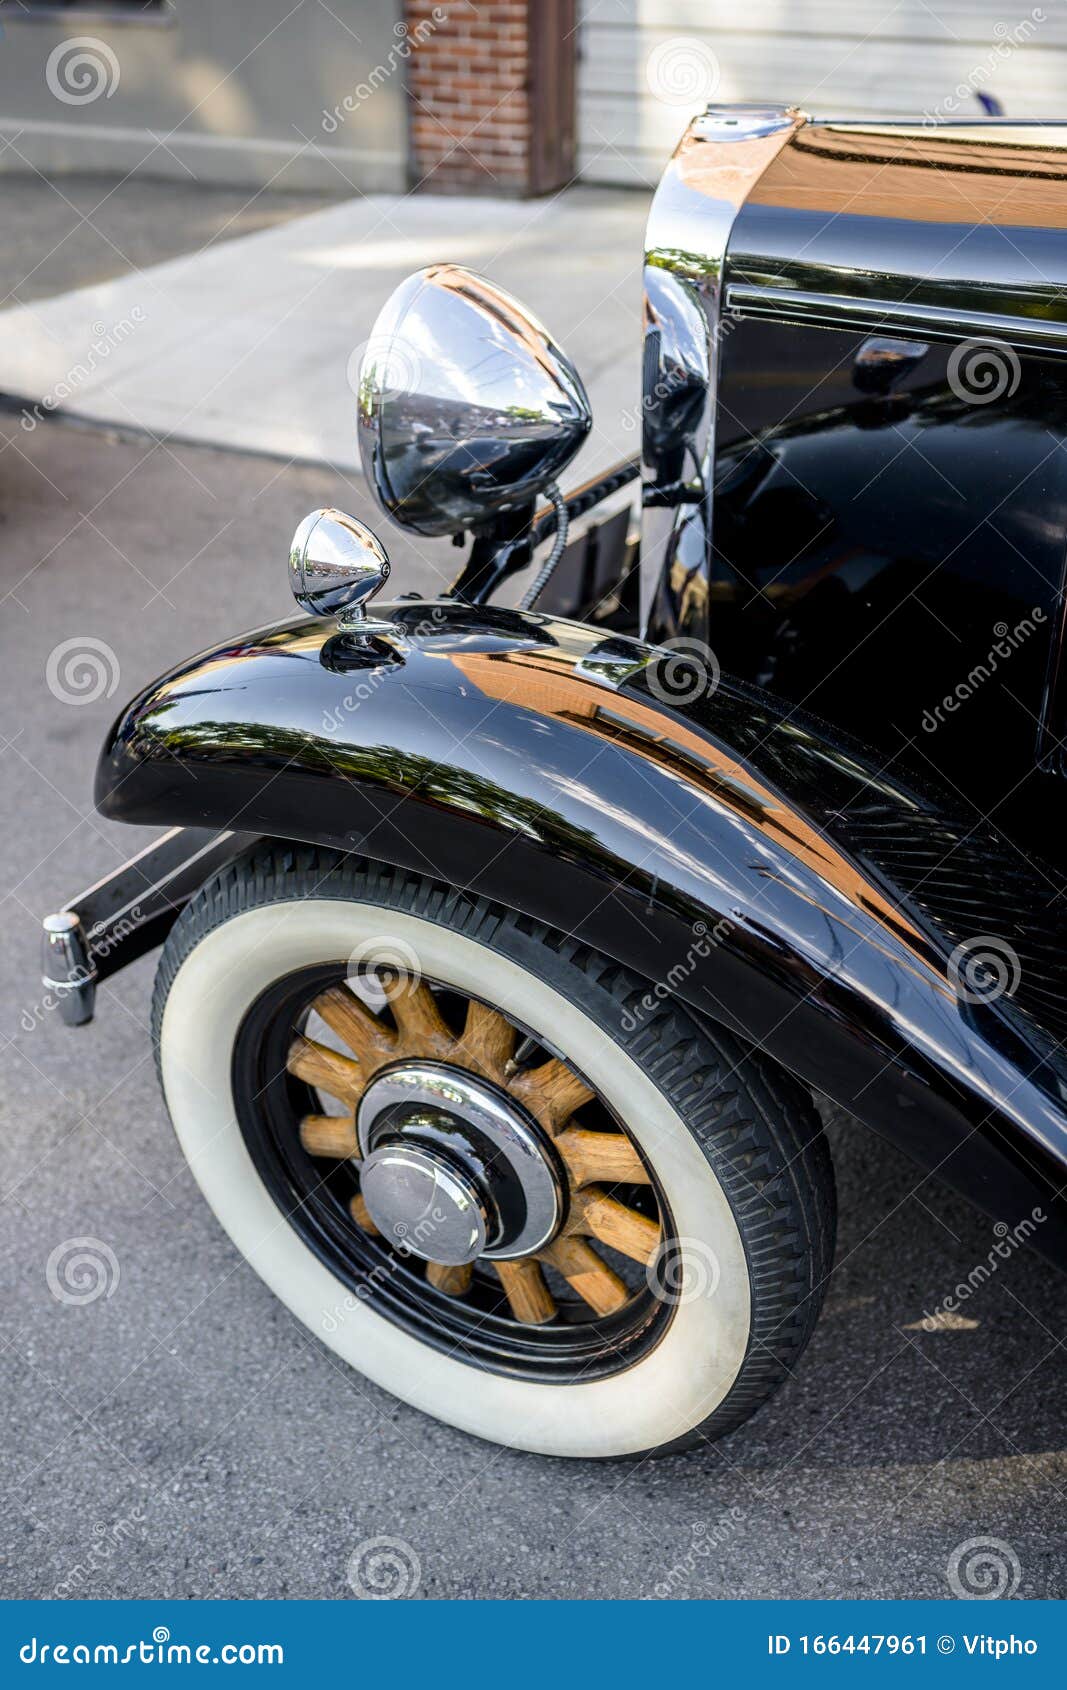 Images Gratuites : aile, voiture, cru, antique, roue, Rétro, vieux